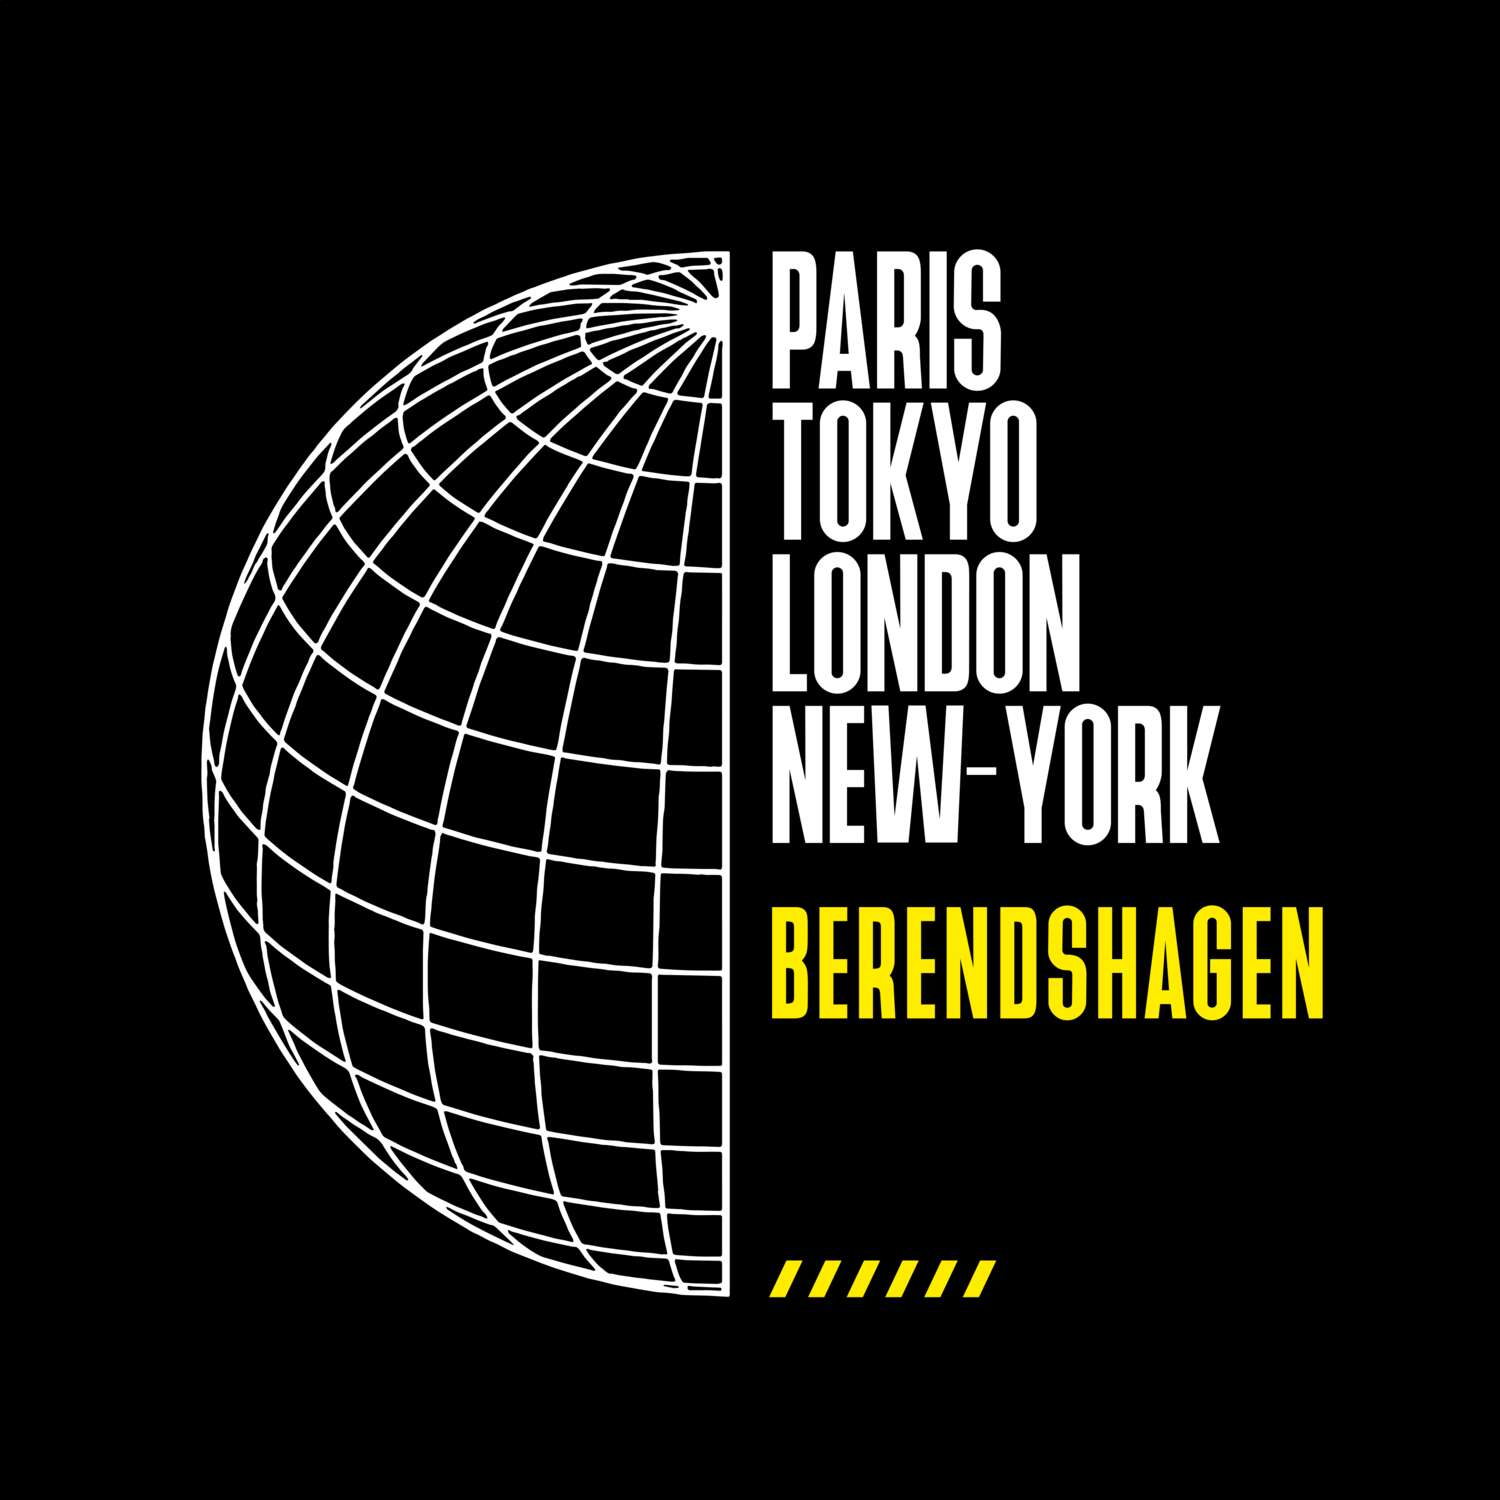 Berendshagen T-Shirt »Paris Tokyo London«